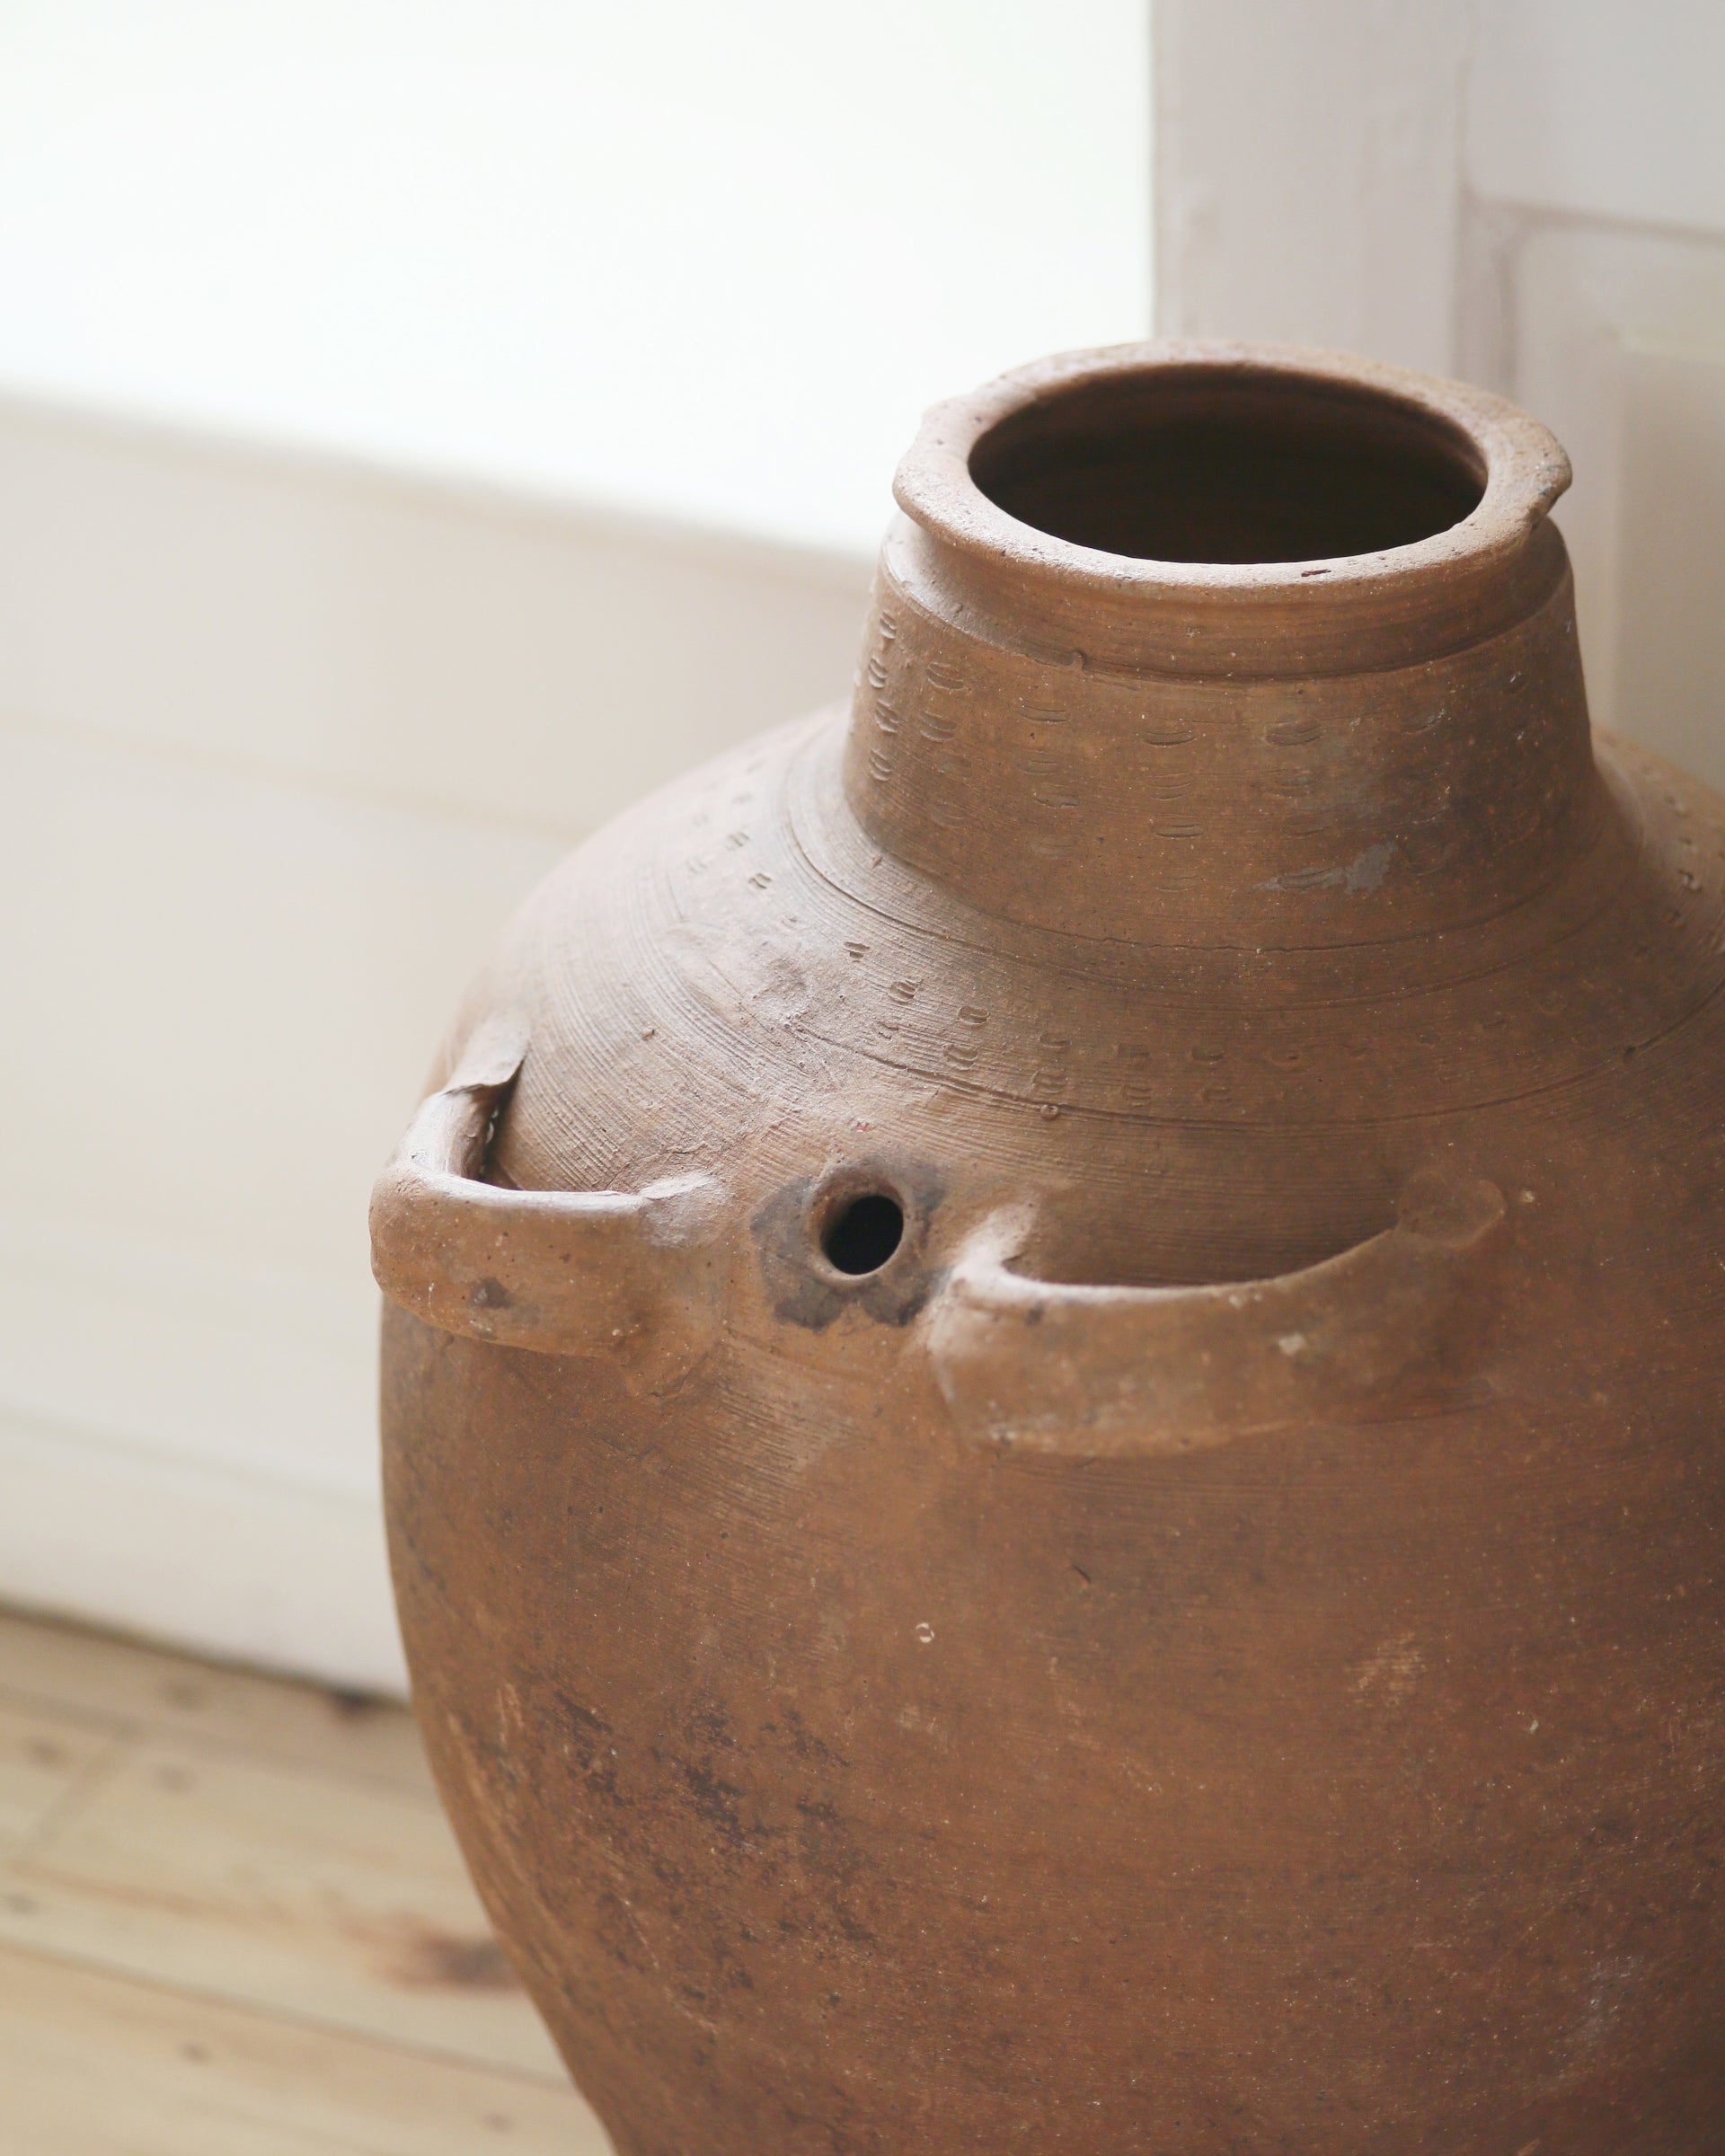 Handmade artisanal detail on top of vintage terracotta olive pot